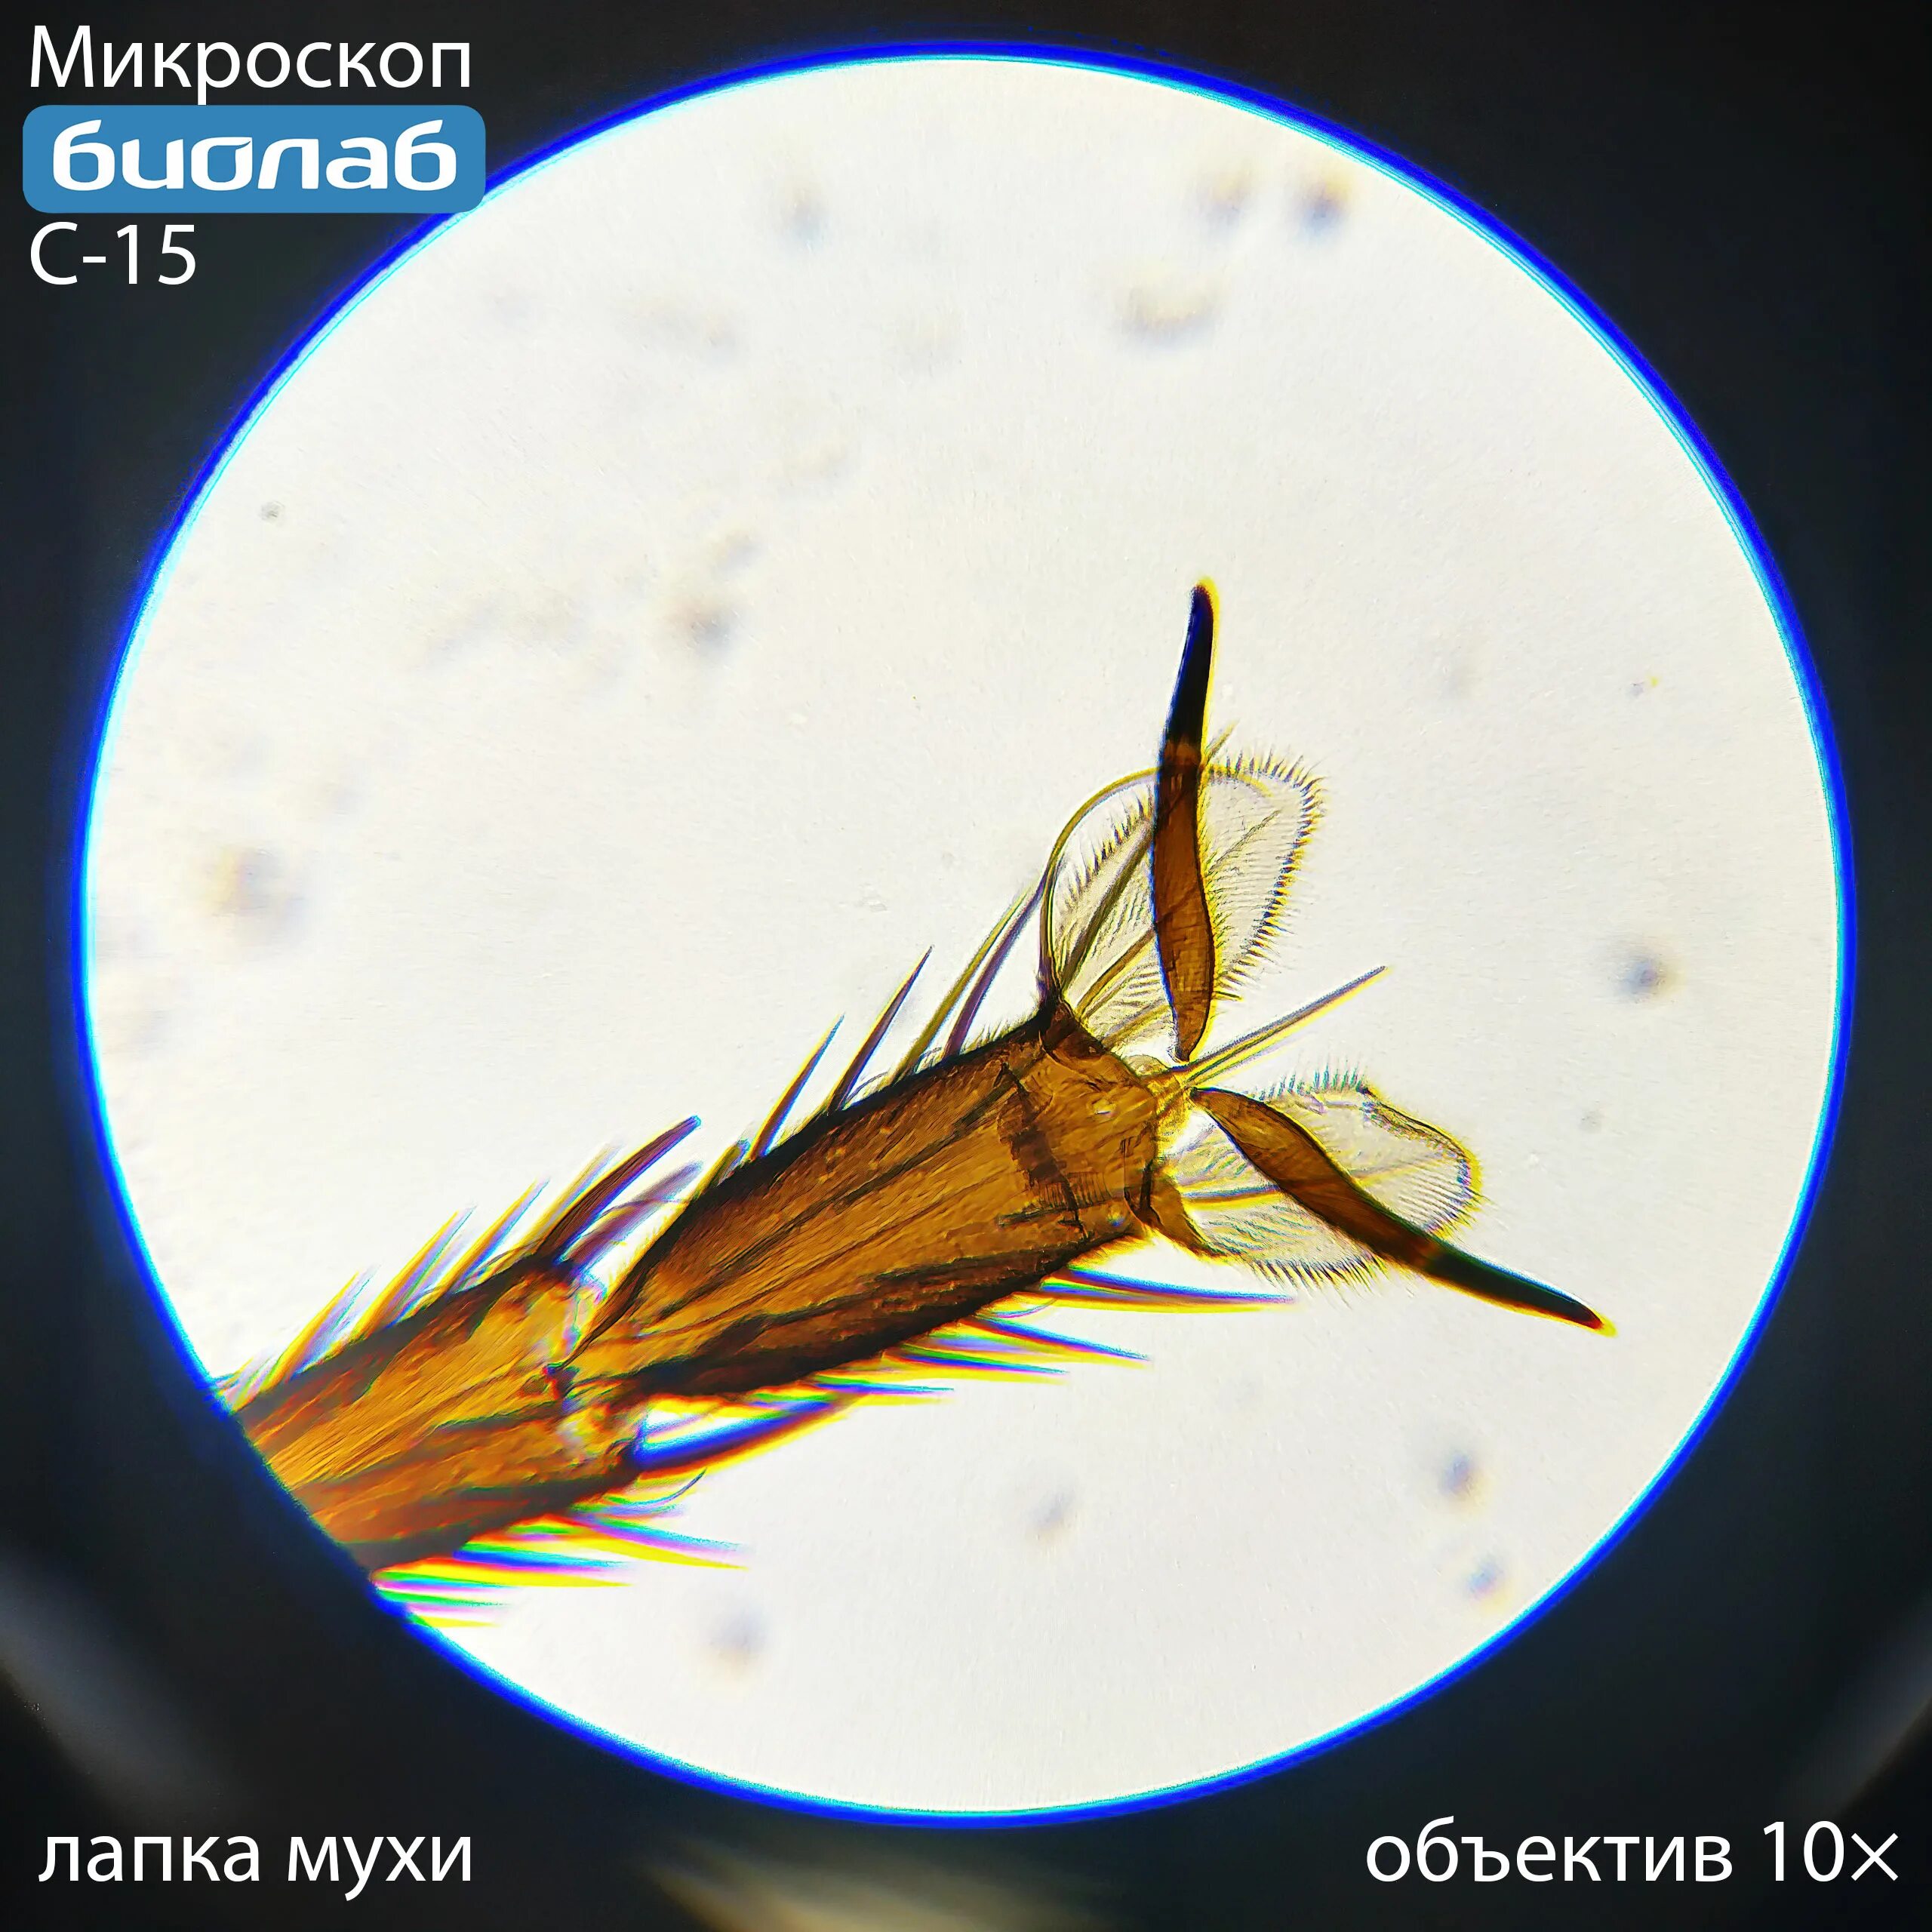 Объектив 2х для микроскопа БИОЛАБ. Лапка мухи под микроскопом. Лапы мухи под микроскопом. Мушка в микроскоп. Лапки микроскопа